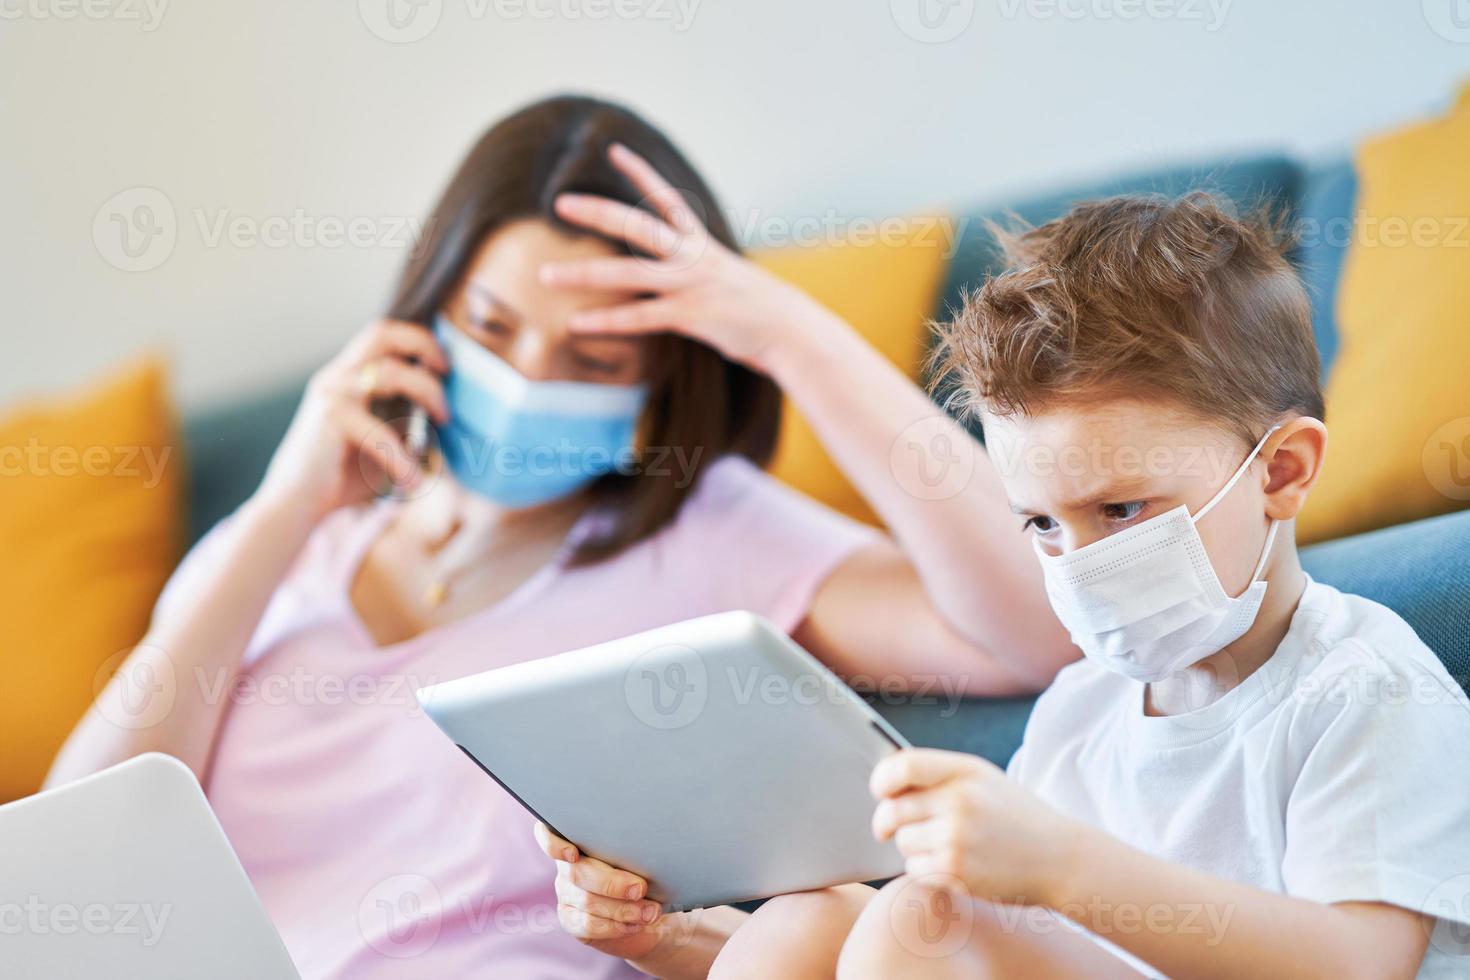 niño y madre exhausta tratando de trabajar en casa durante la pandemia del coronavirus foto